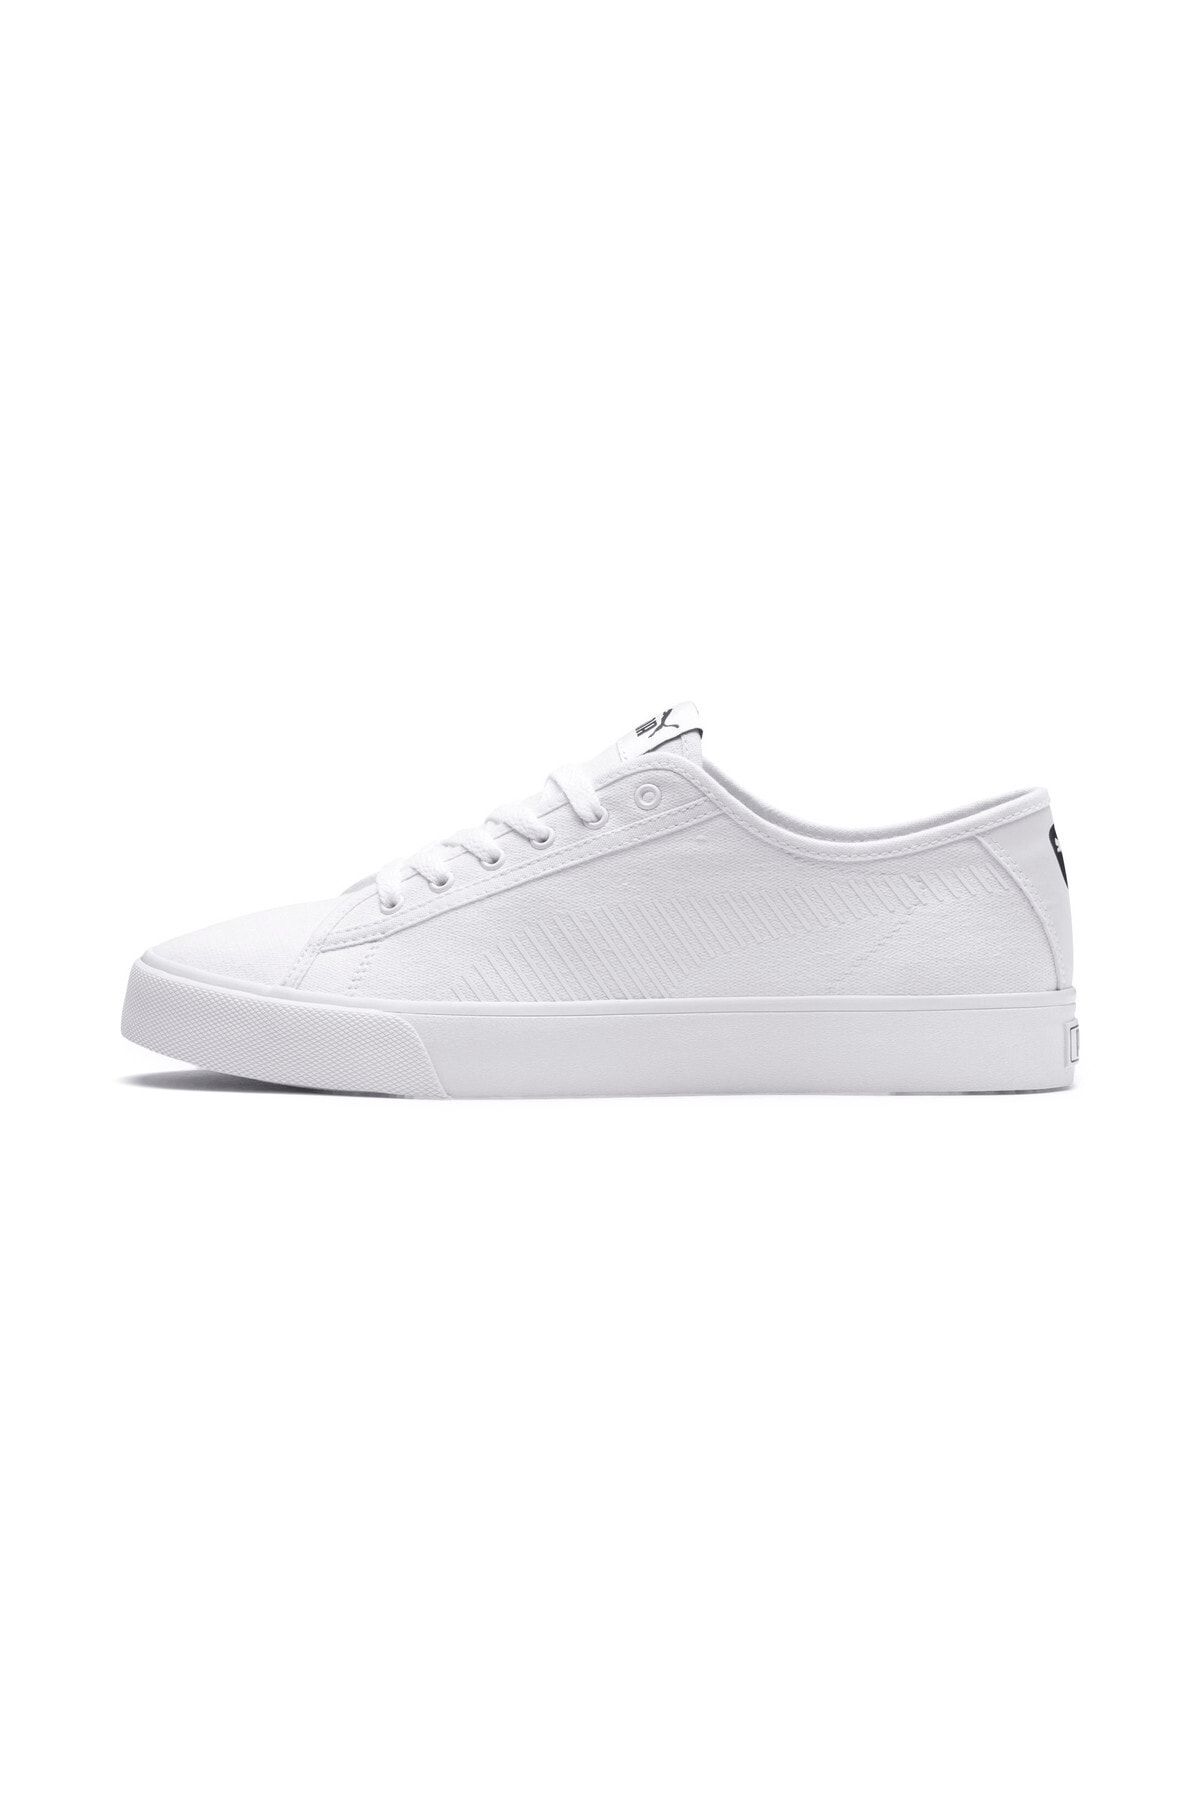 Puma Bari Beyaz Beyaz Erkek Sneaker Ayakkabı 100415377